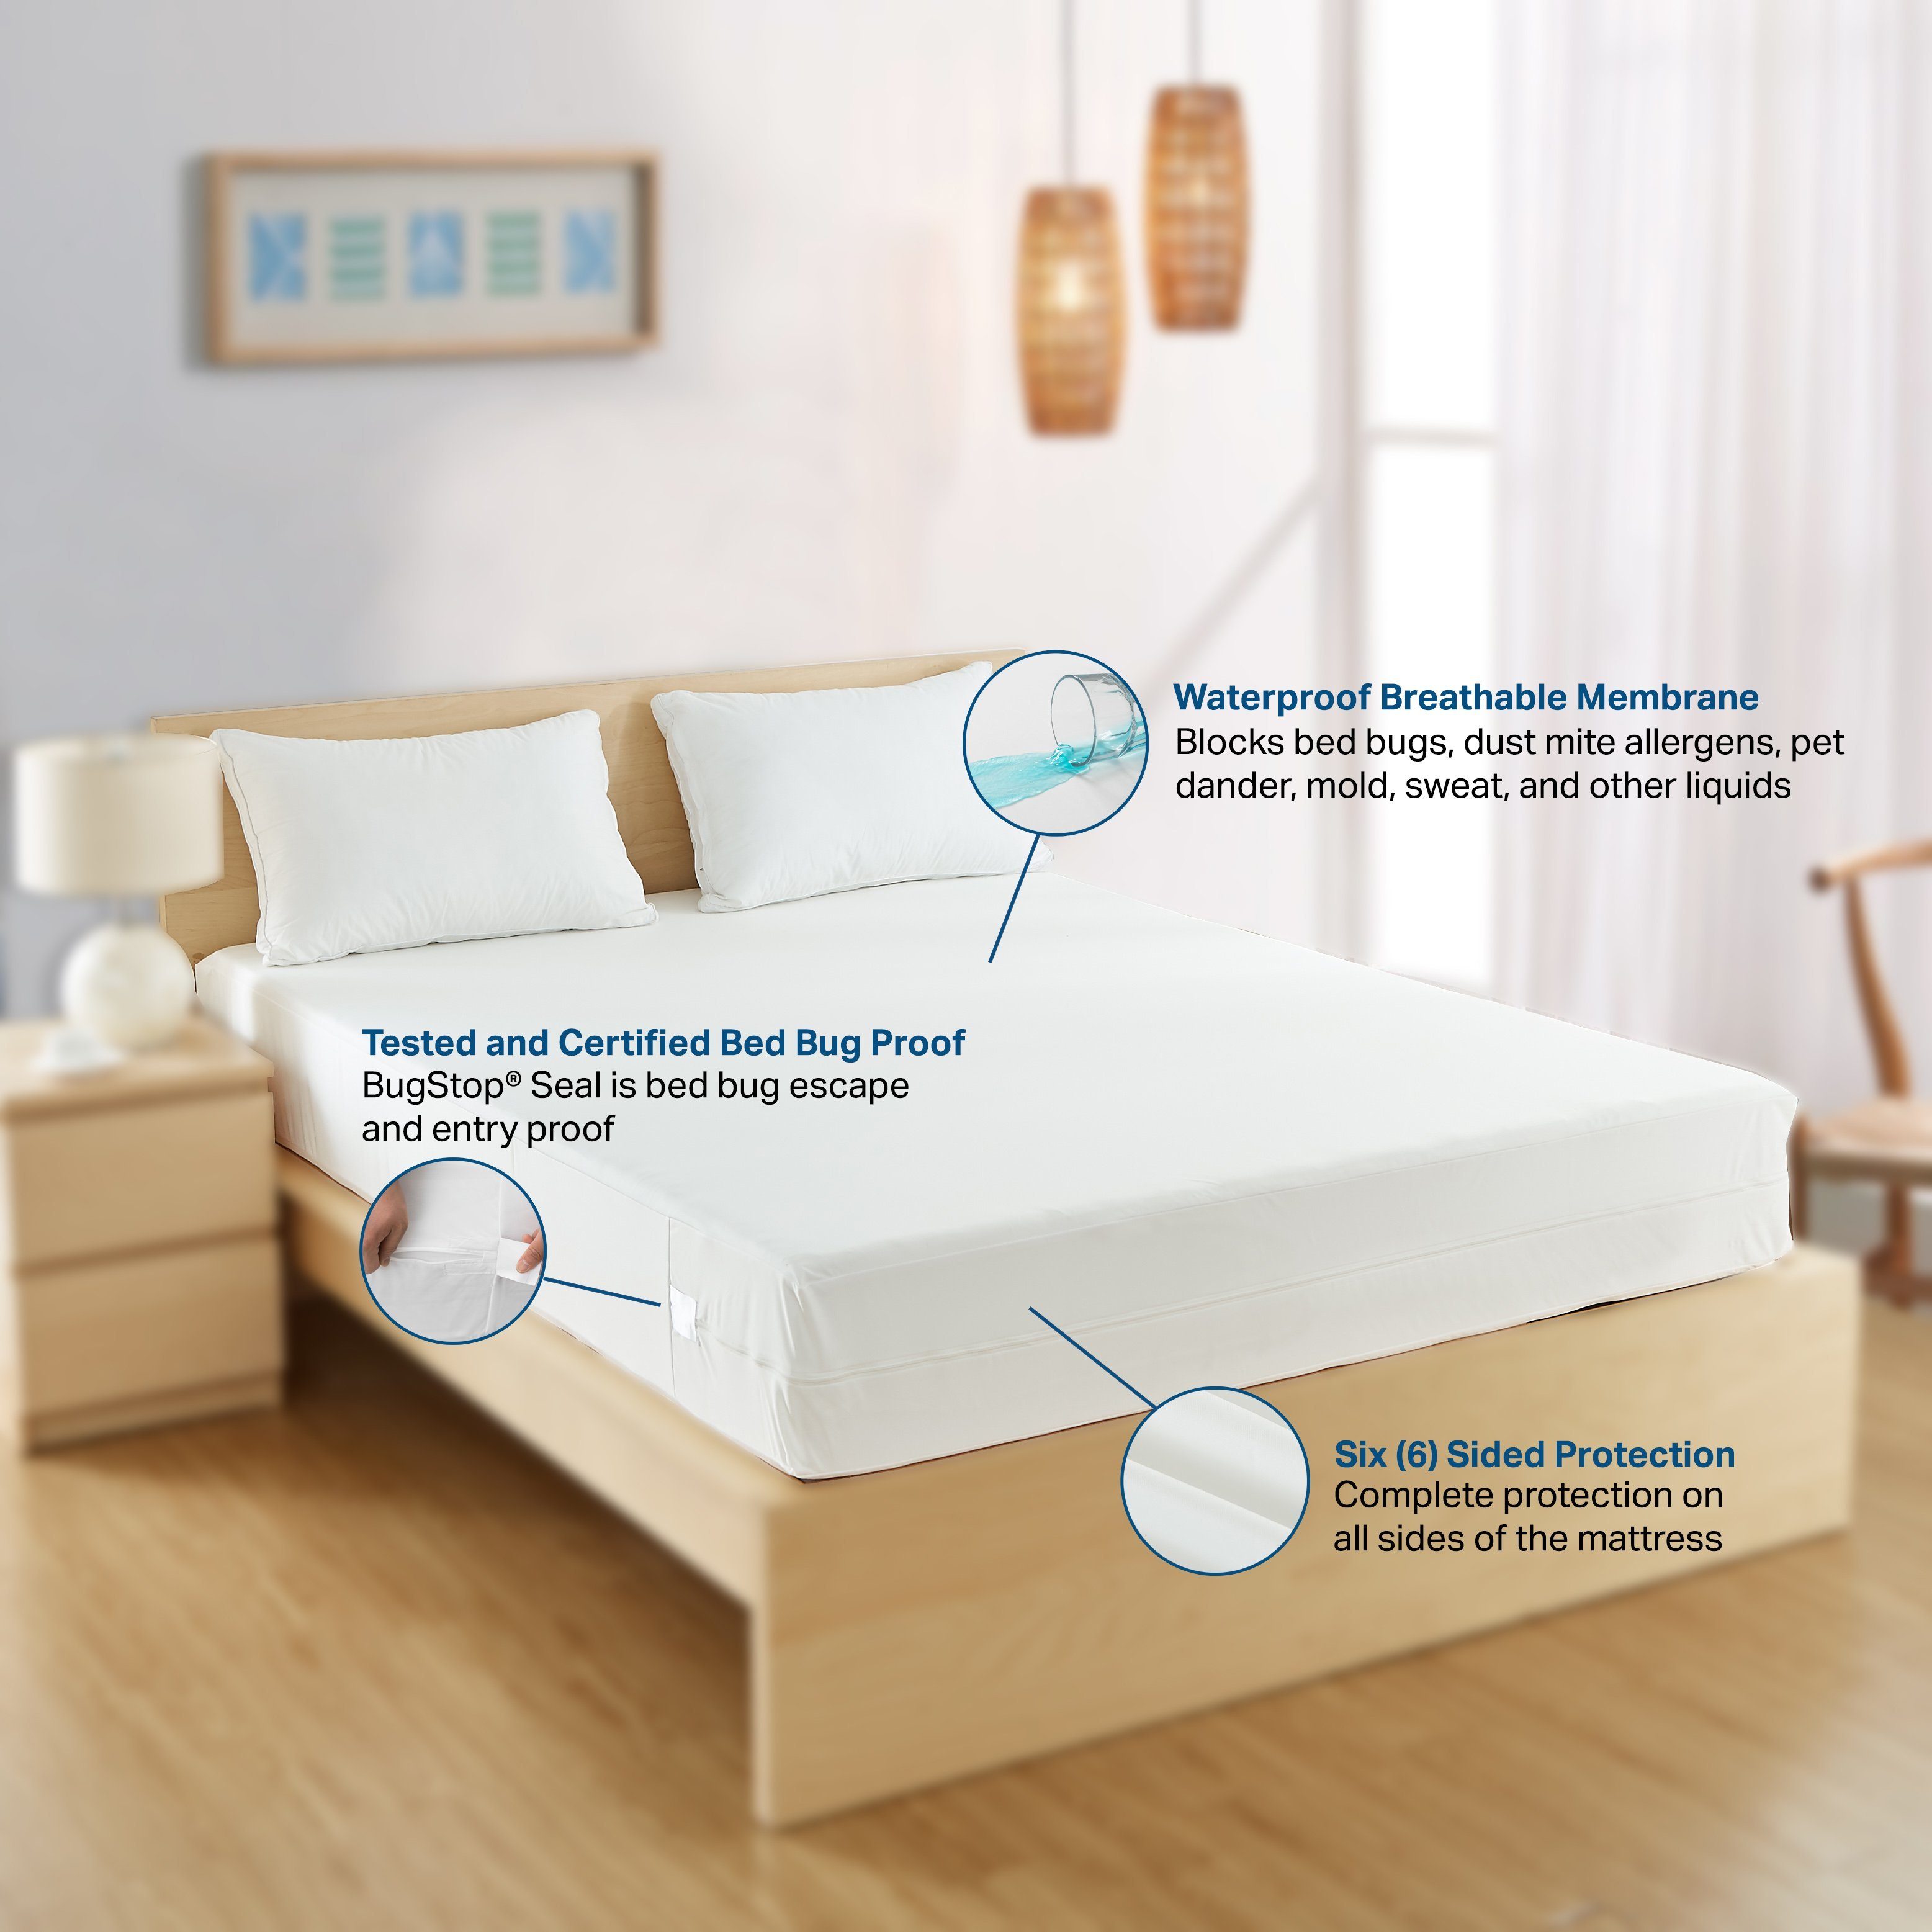 BedBug Solution™ Sofa Sleeper Elite Zippered Mattress Encasement Zippered Mattress Protector / Cover Bargoose Home Textiles, Inc. 